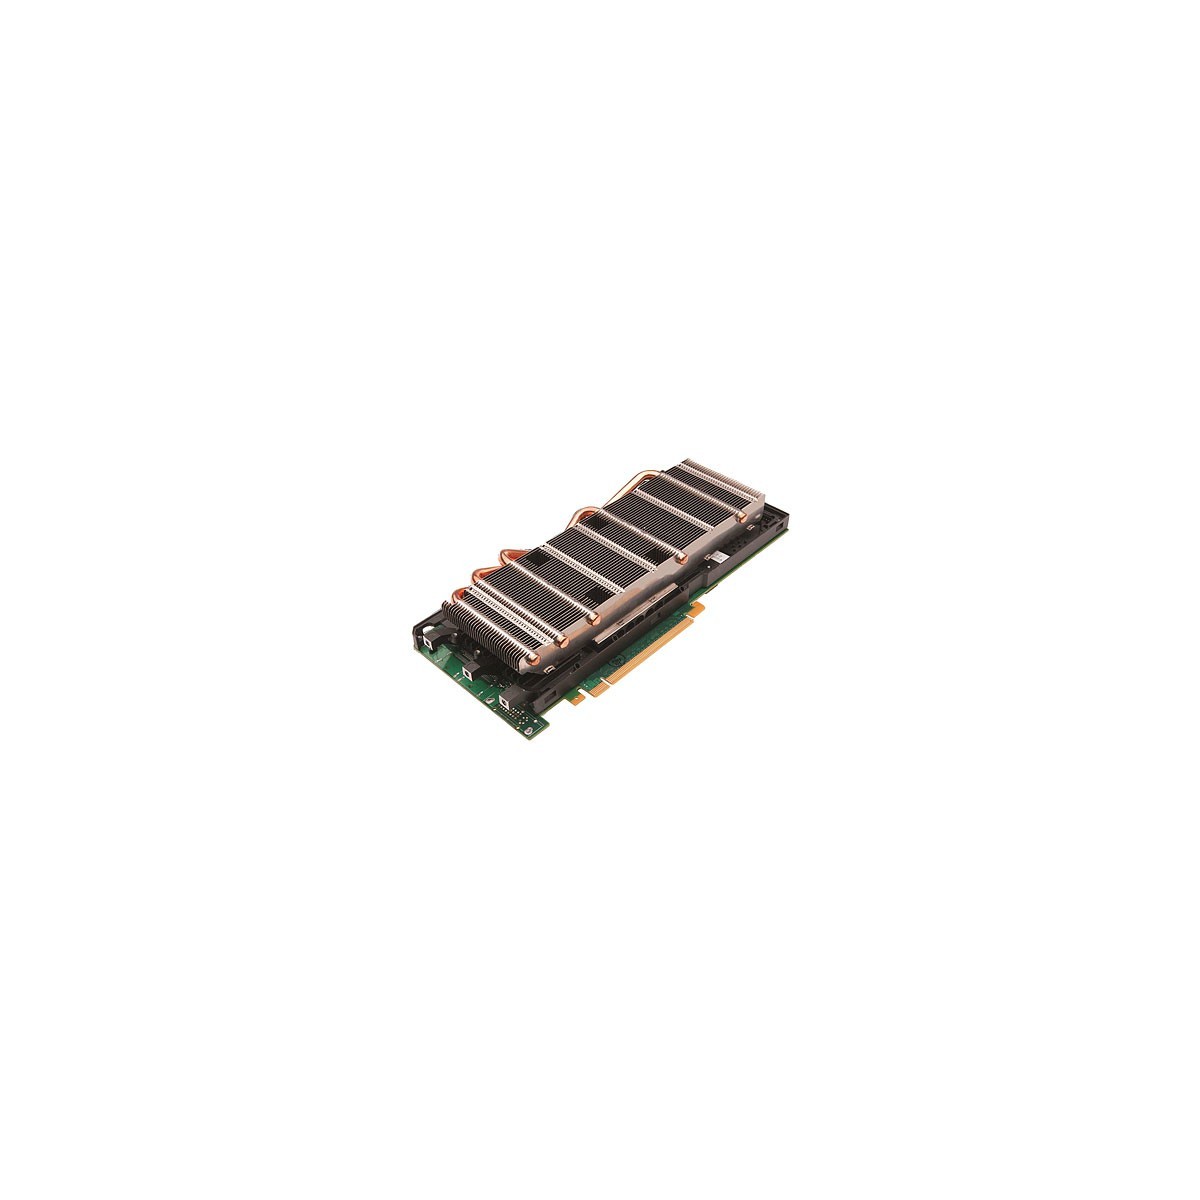 HPE 729851-B21 - GRID K2 - 8 GB - GDDR5 - 256 bit - PCI Express 3.0